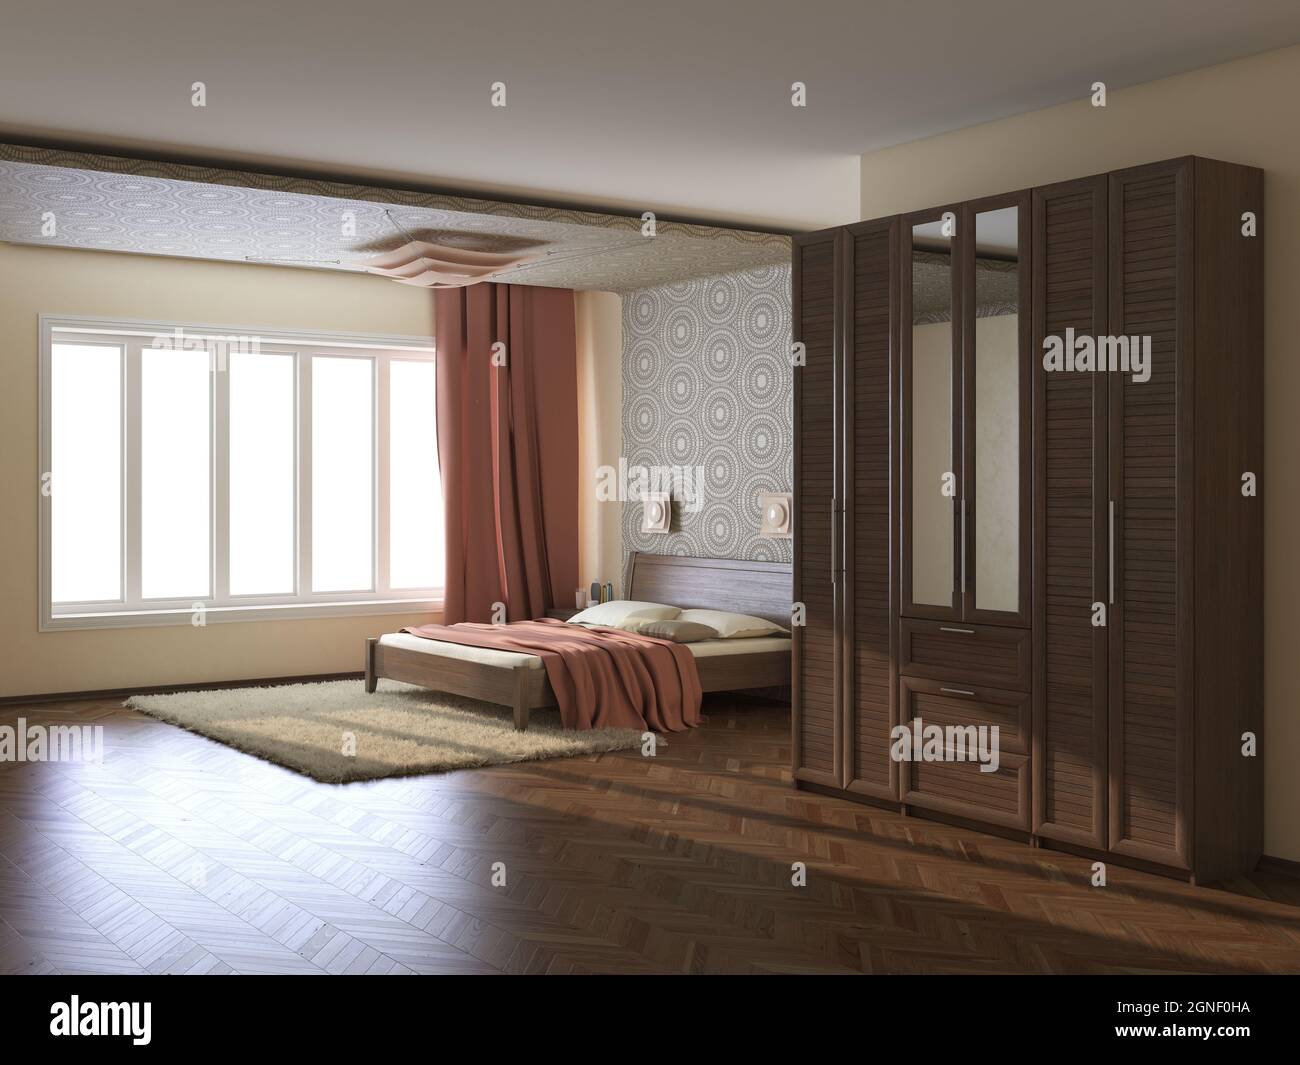 Intérieur moderne de chambre avec murs beige, rideaux en terre cuite, grande fenêtre, lit avec oreillers, armoire avec miroir, Moquette et parquet Banque D'Images